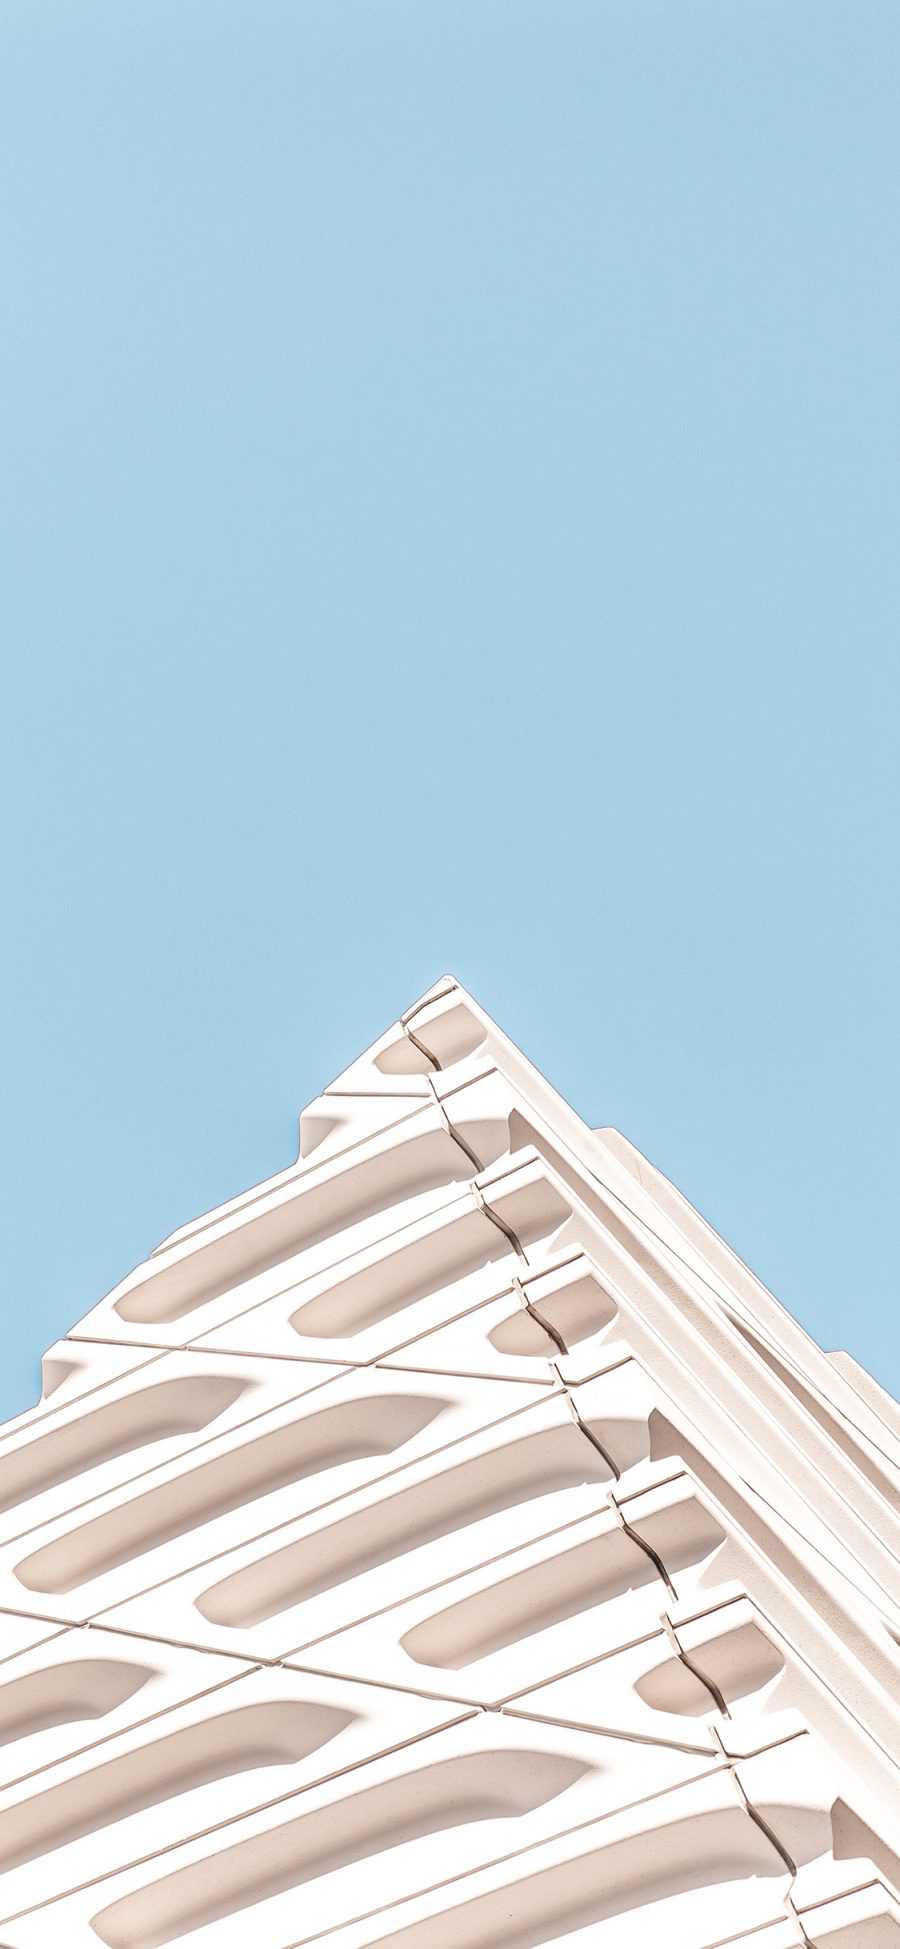 [2436×1125]建筑 楼房 设计 现代 蓝白 小清新 苹果手机壁纸图片